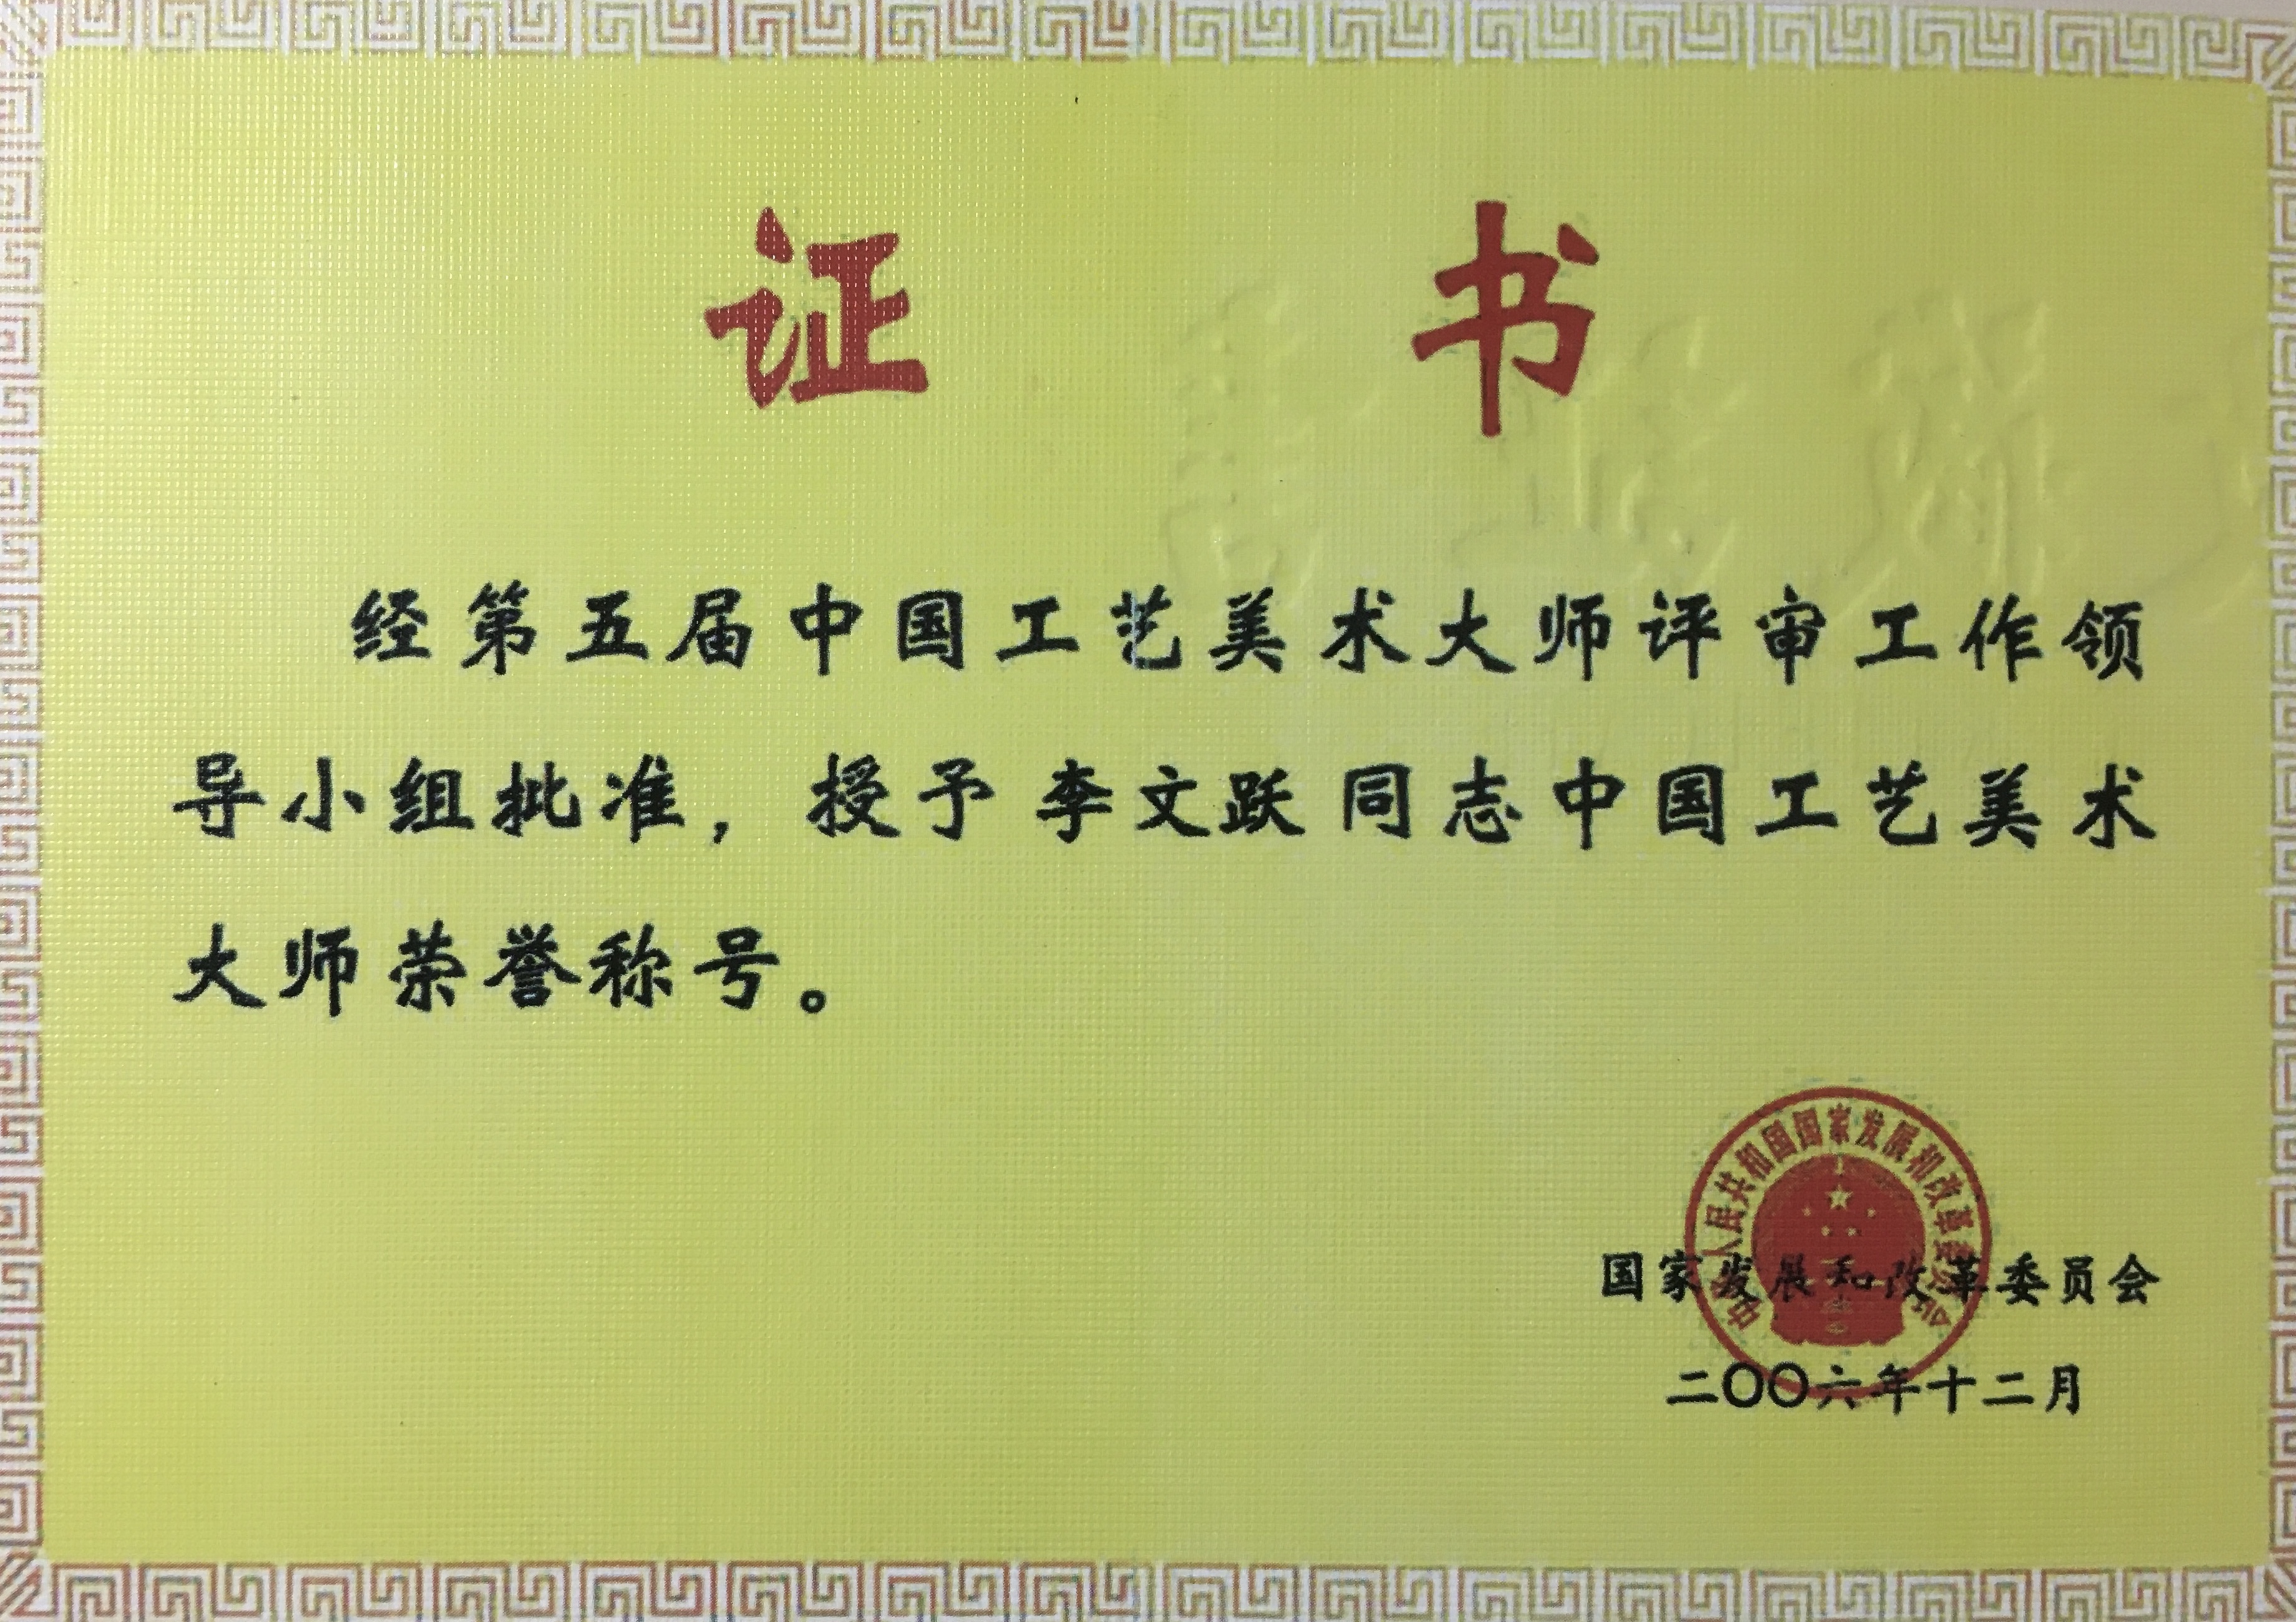 李文跃中国工艺美术大师荣誉称号证书